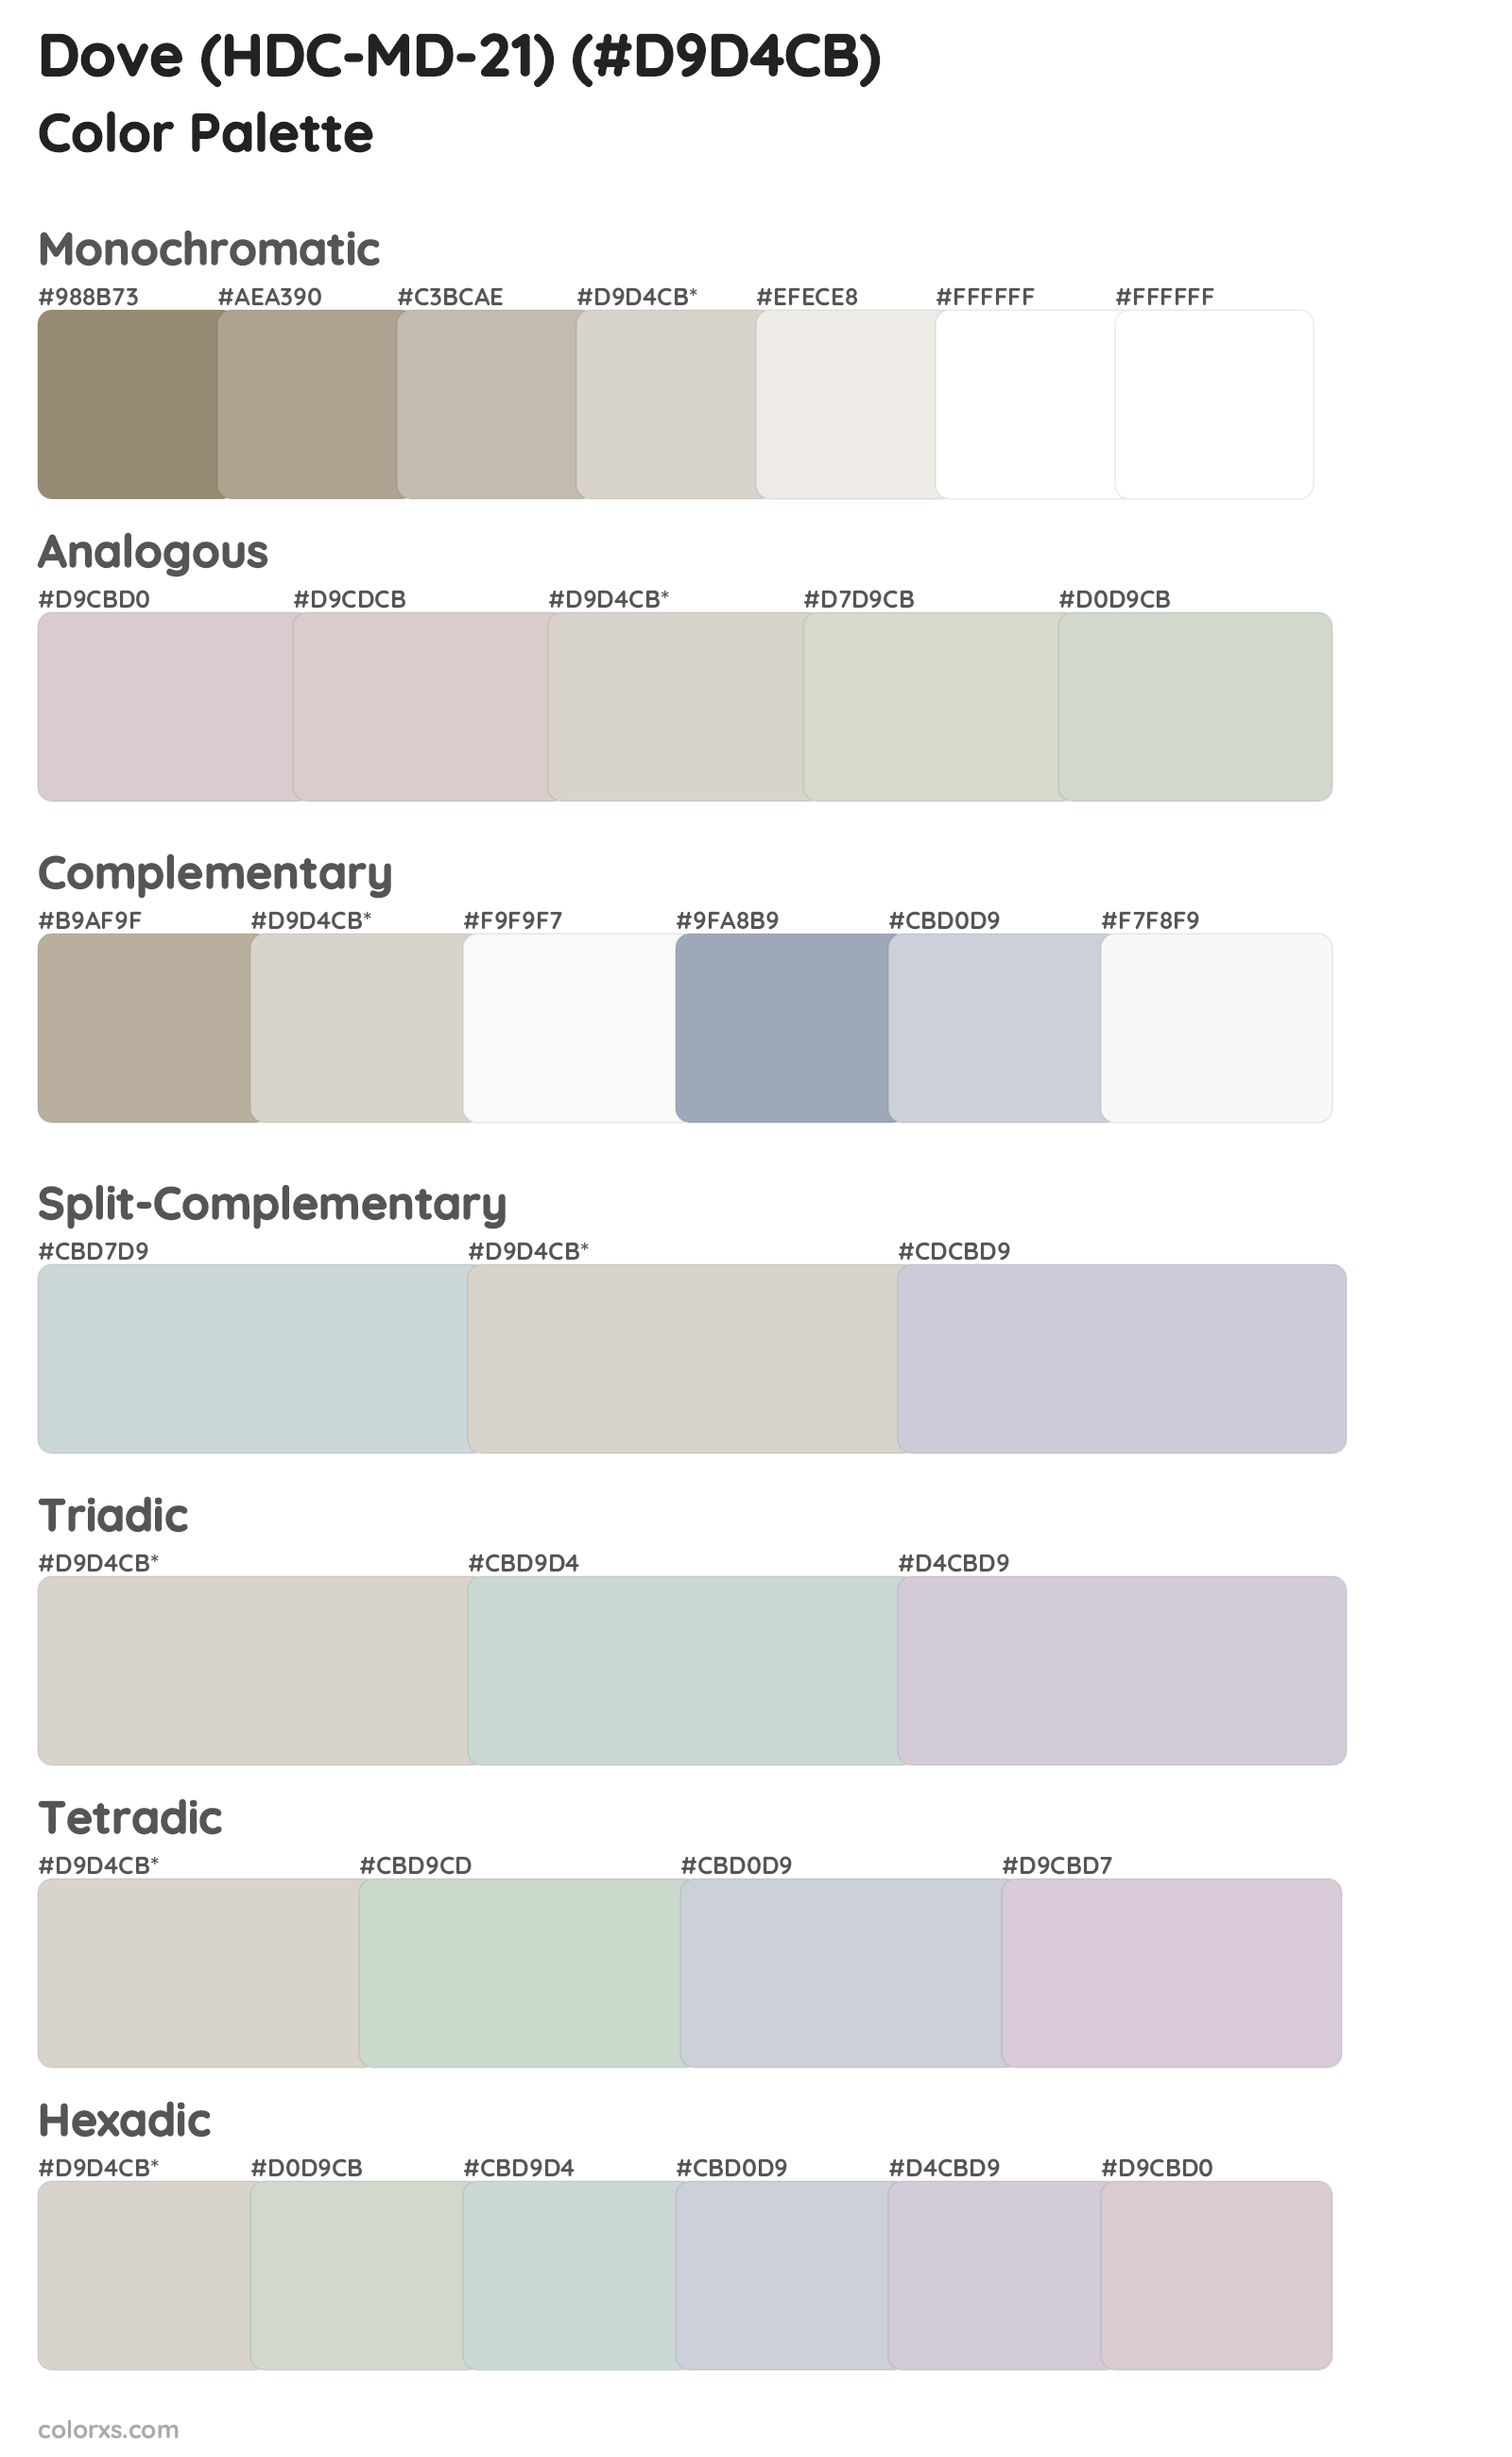 Dove (HDC-MD-21) Color Scheme Palettes